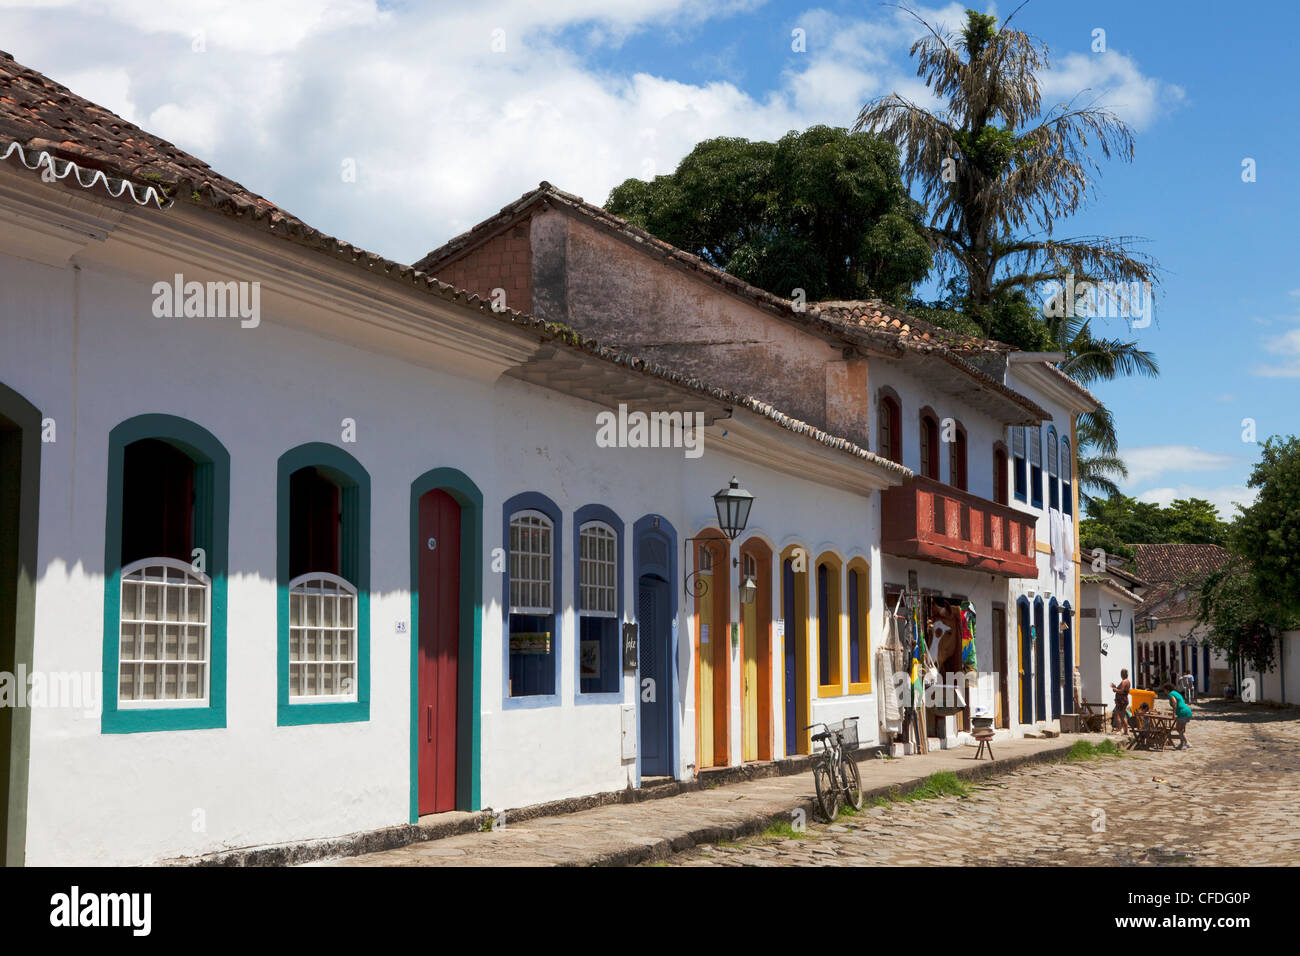 Maisons historiques de la ville coloniale de Paraty, la Costa Verde, Etat de Rio de Janeiro, Brésil, Amérique du Sud, Amérique Latine Banque D'Images